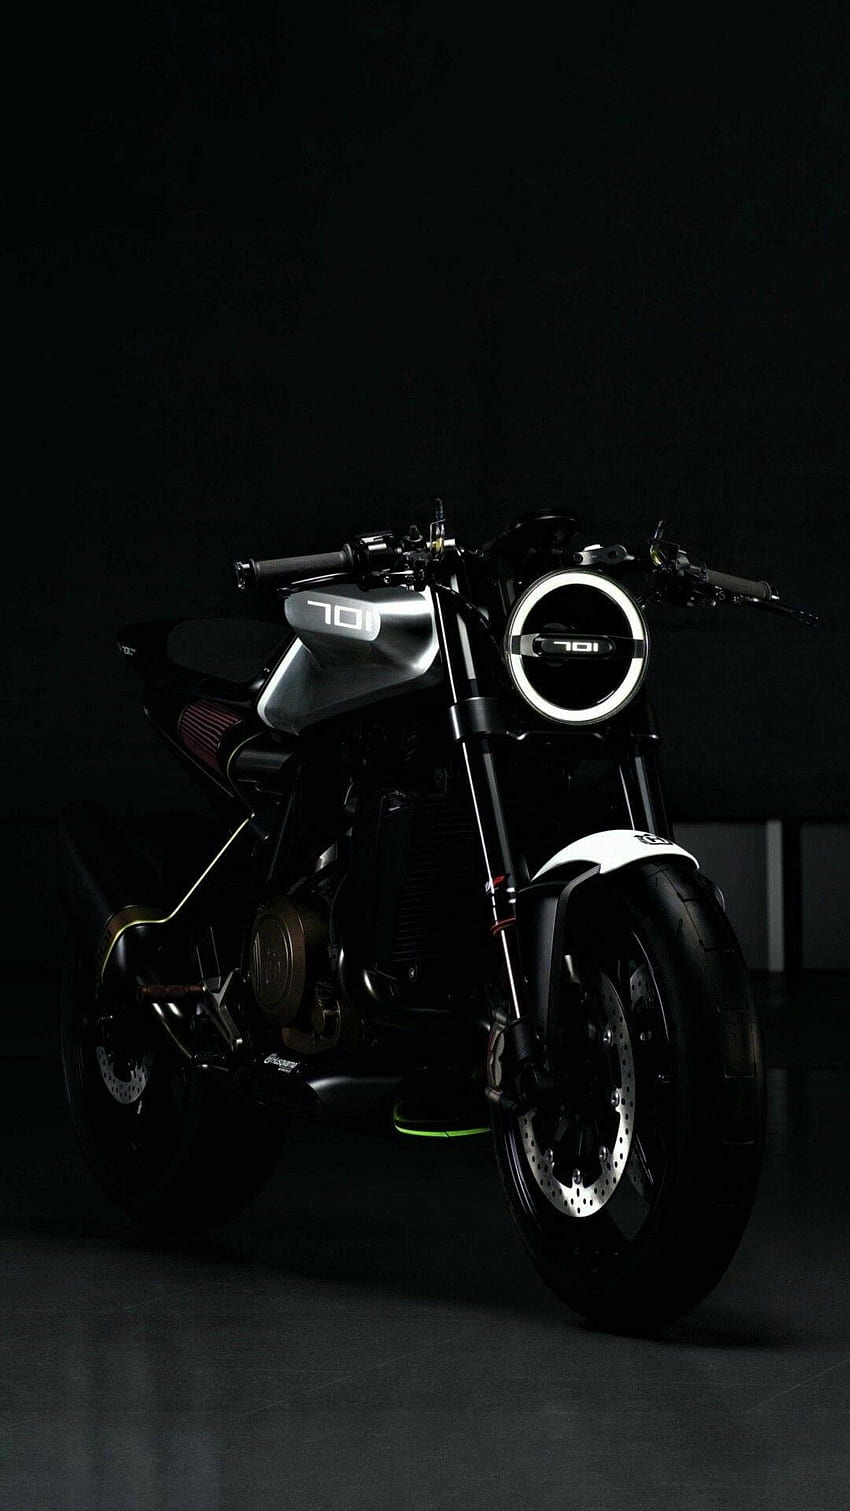 Neon Glow Superbike 4K Wallpaper Download  MOONAZ